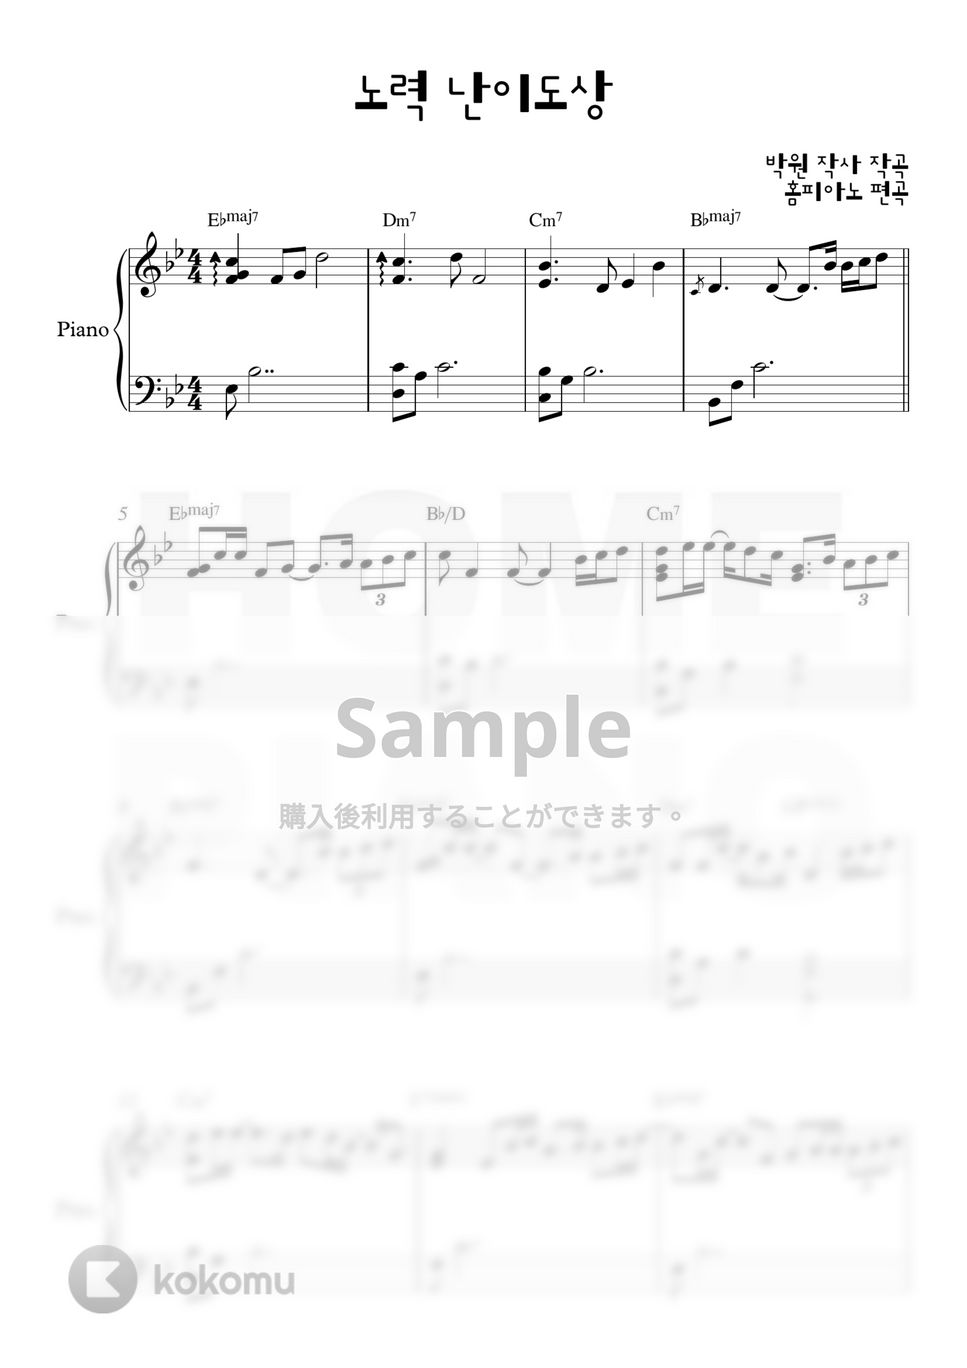 パク・ウォン - 努力 (上級) by HOME PIANO